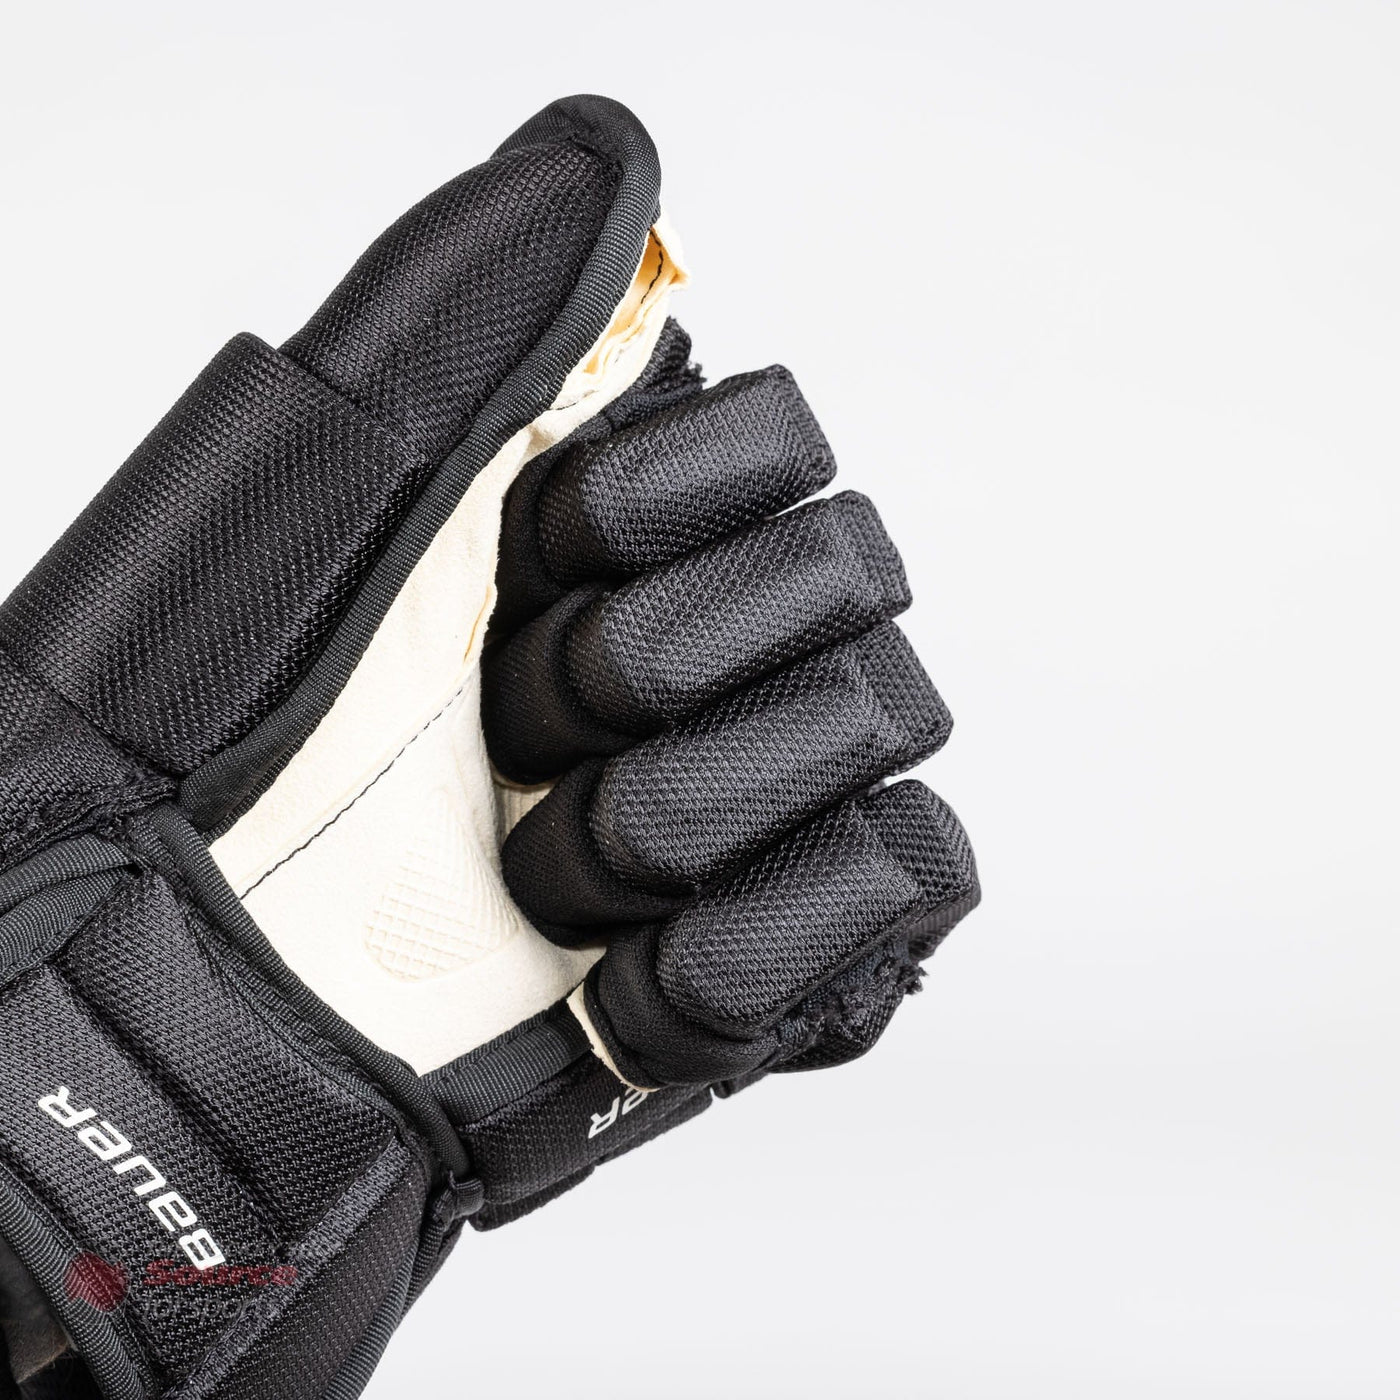 Bauer Nexus Team Pro Junior Hockey Gloves